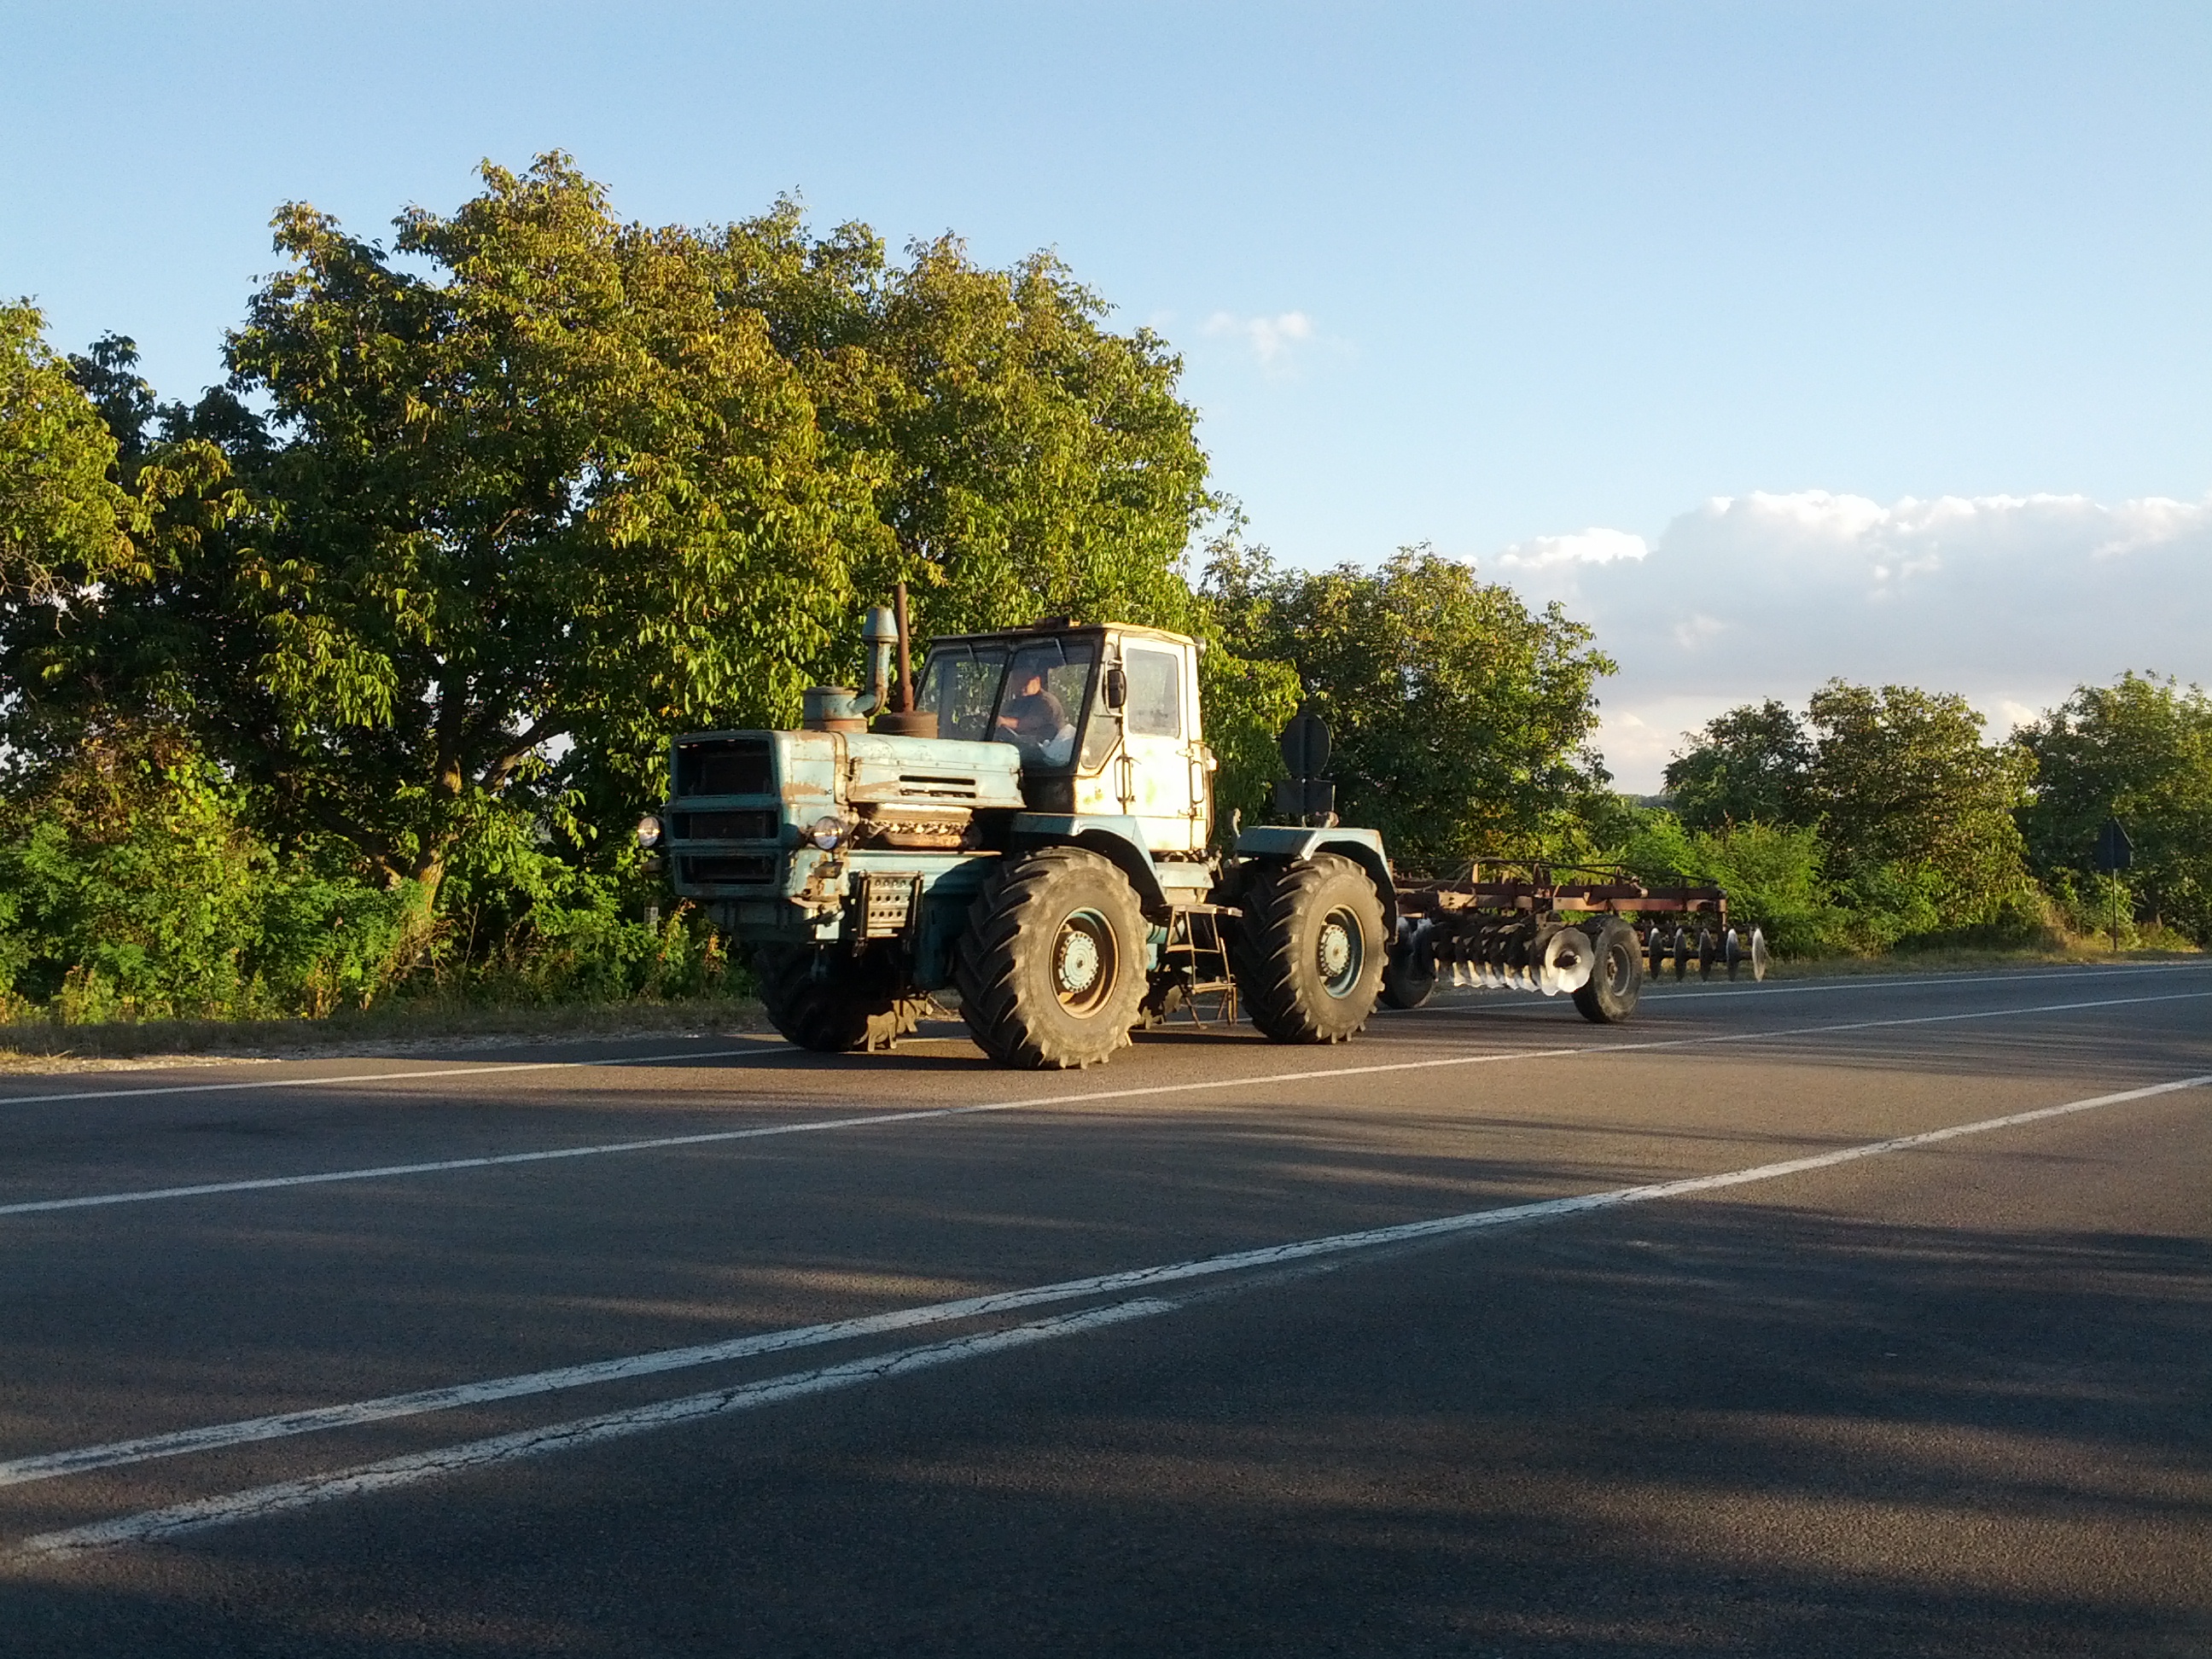 MD, Район Ialoveni, Satul Pojareni, Tractor T150 cu cultivator